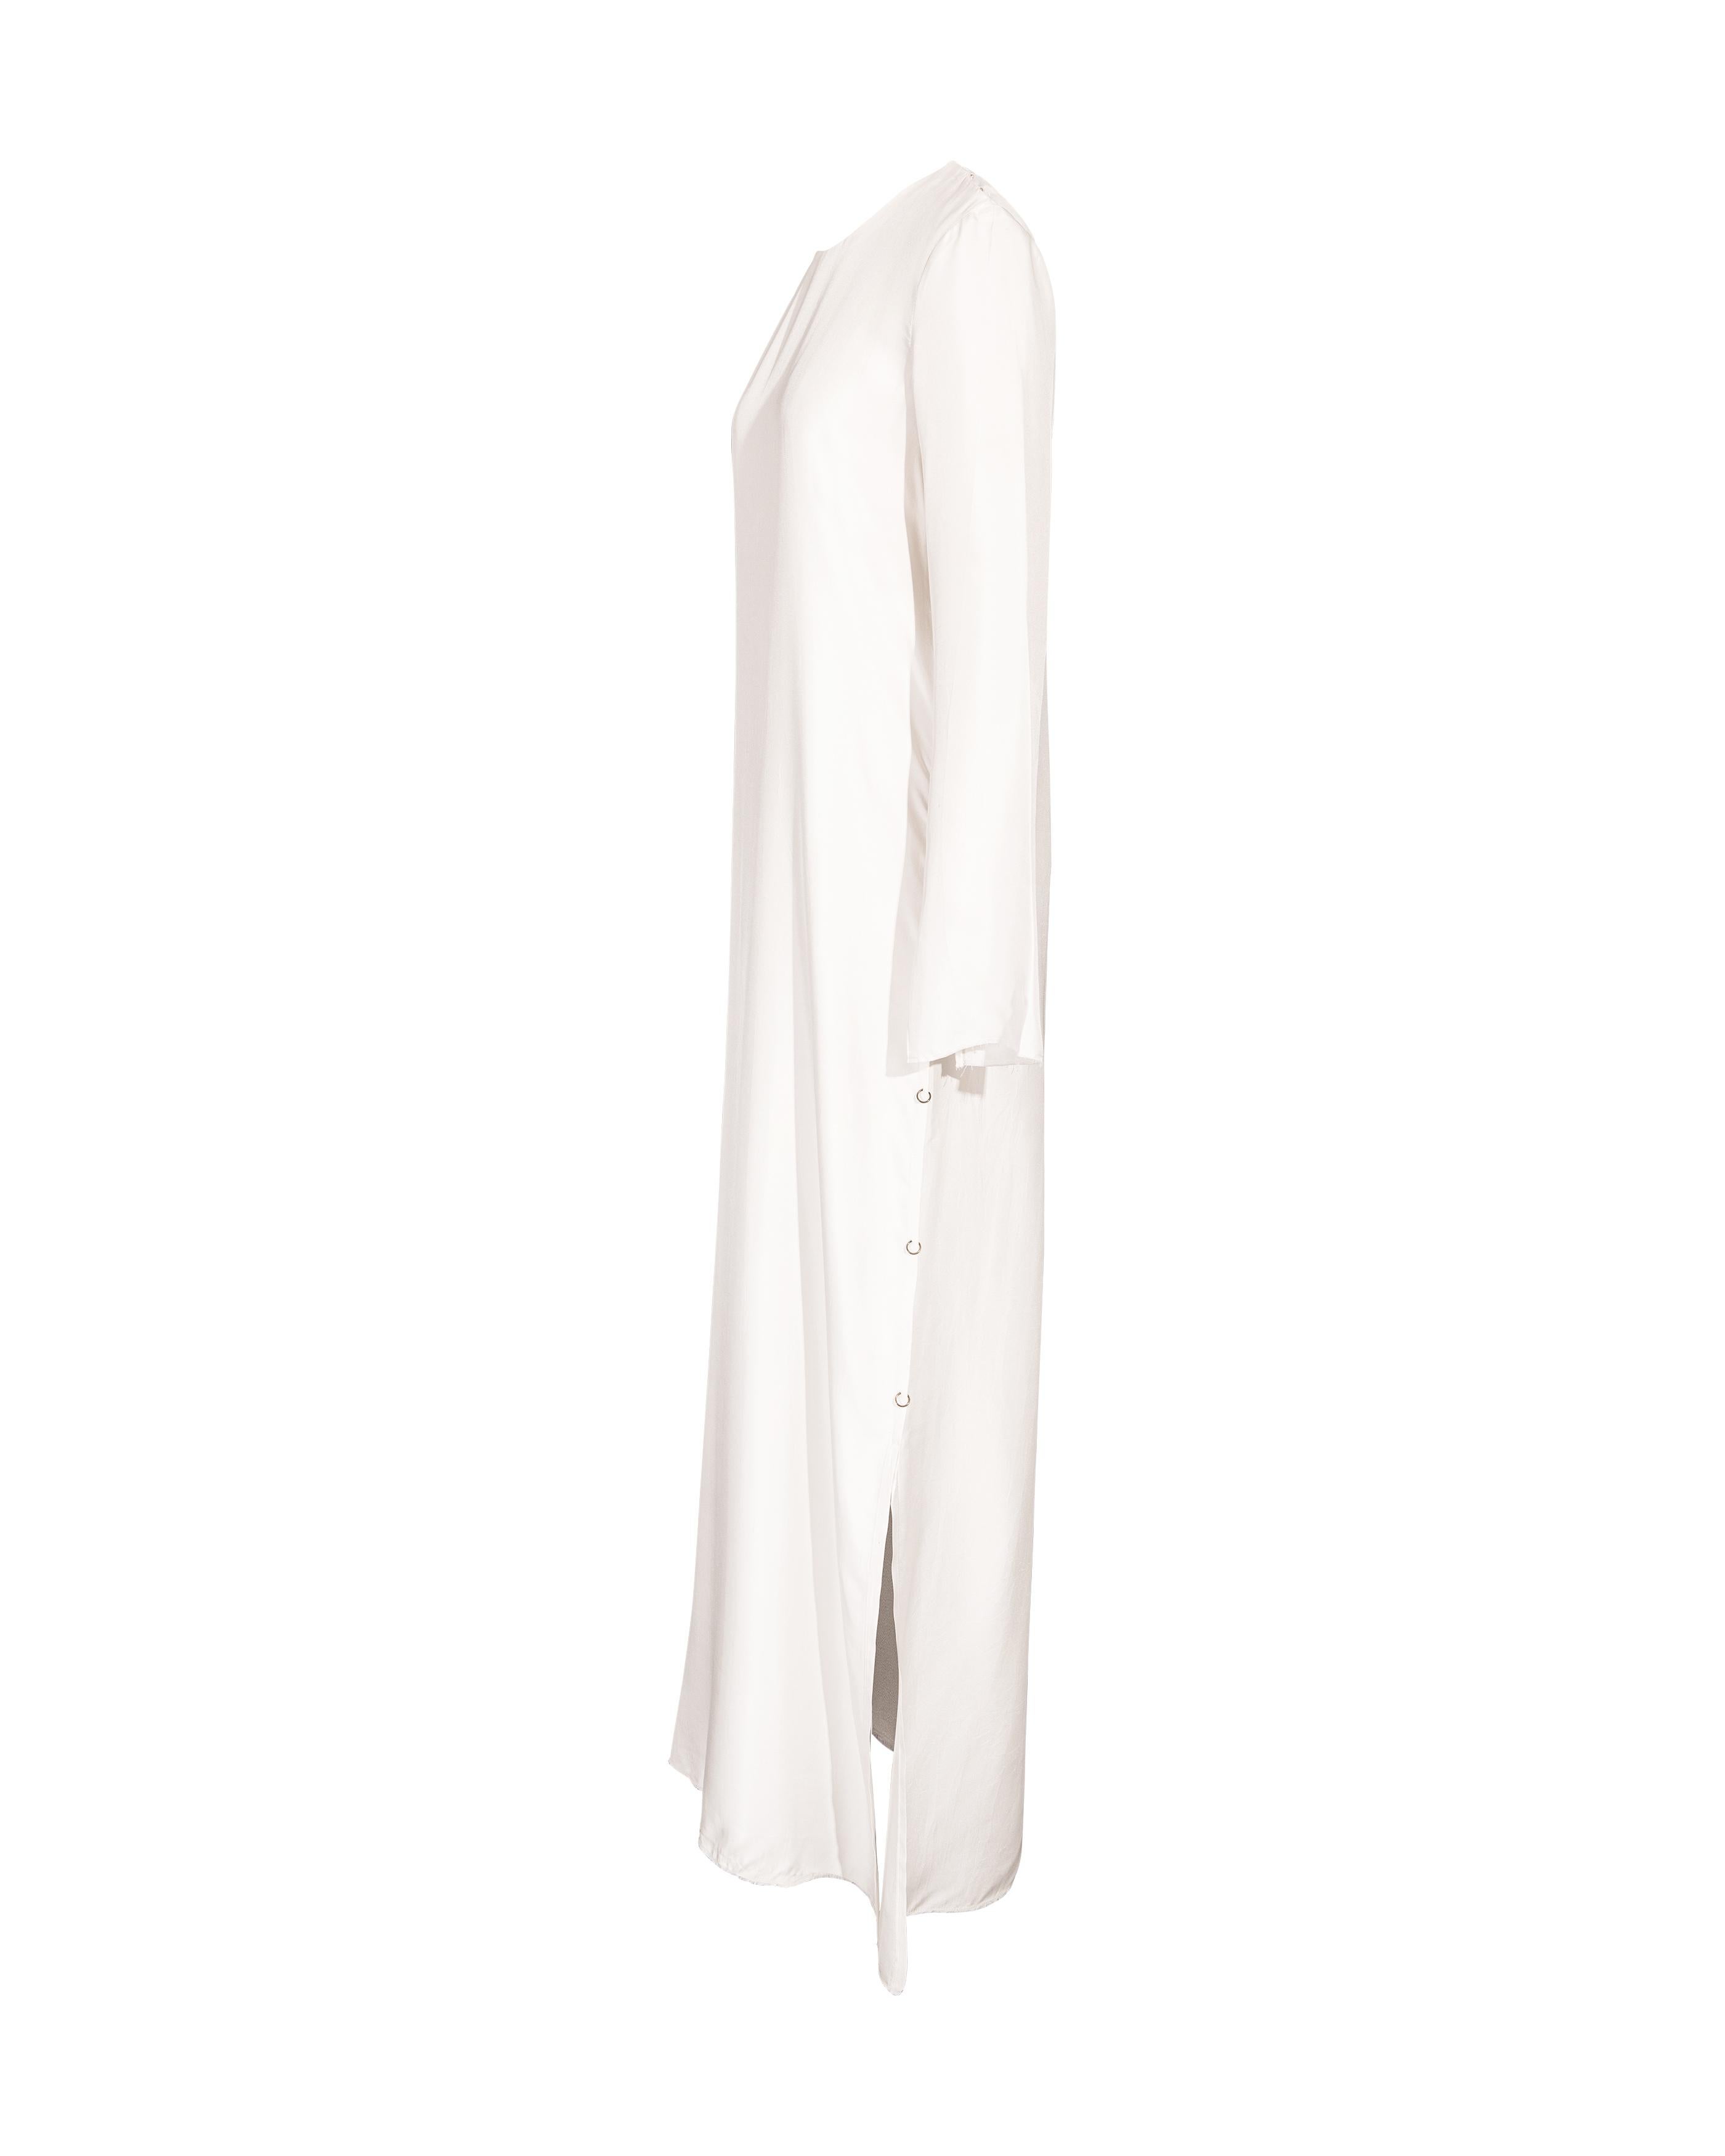 Robe à manches longues en soie blanche S/S 2016 Calvin Klein à manches ouvertes et détails de boucles en bronze sur les côtés, avec ourlet brut non fini. Fermeture par boutons-pression aux épaules. Contenu du tissu : 100% soie. En très bon état